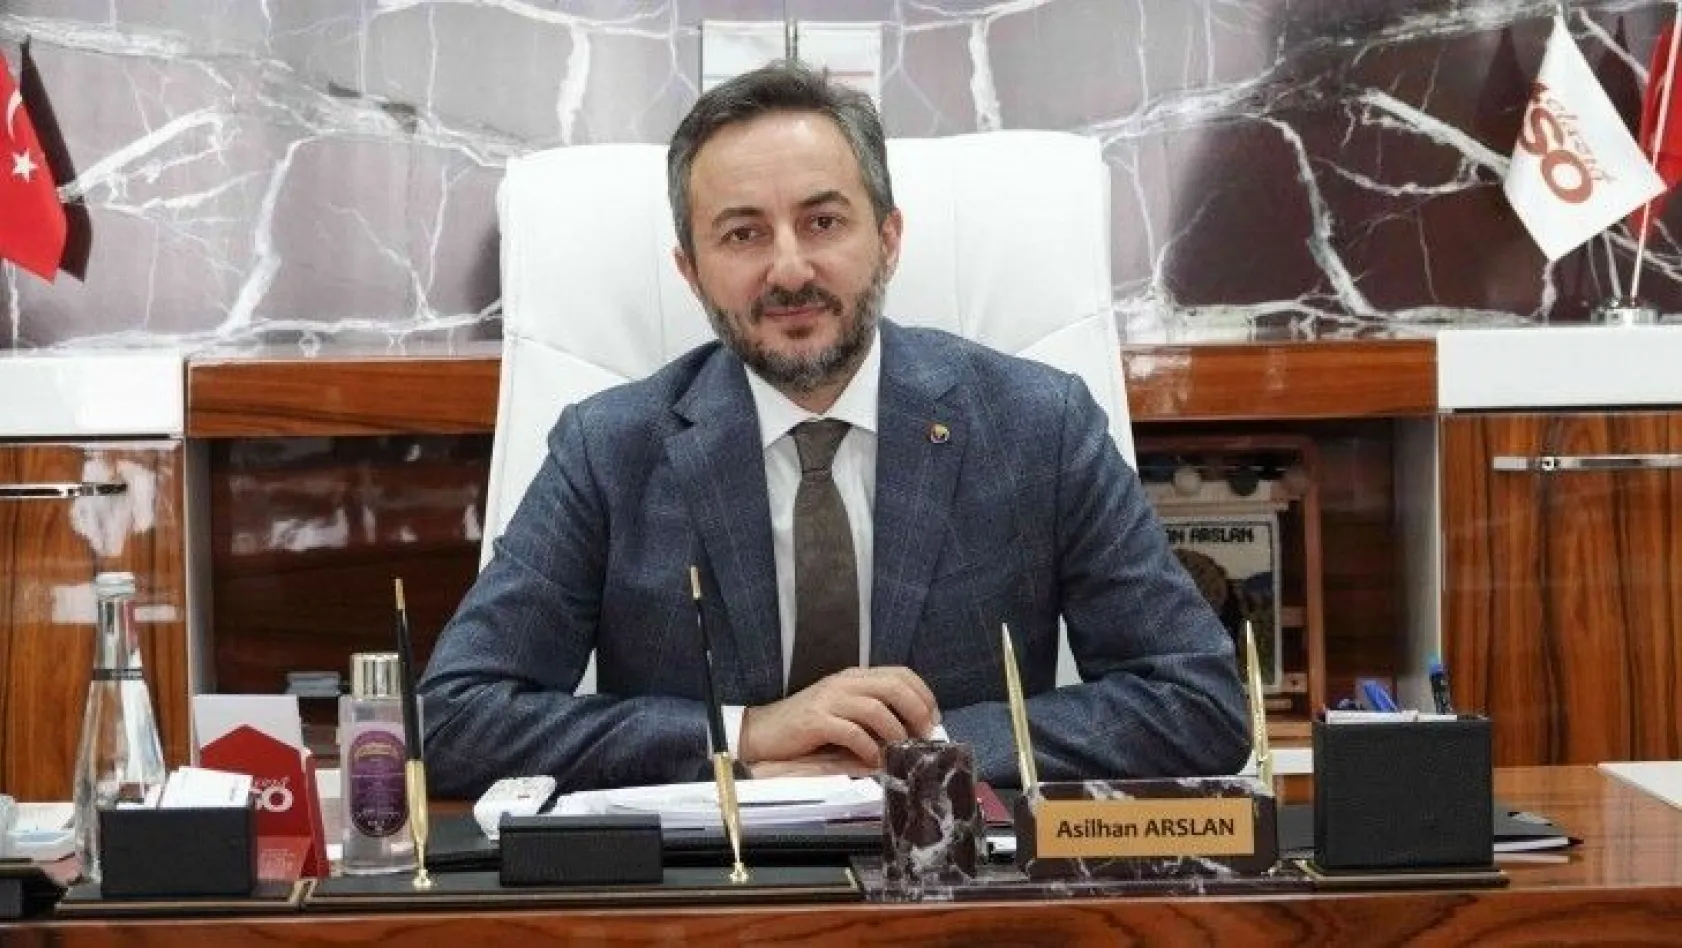 Başkan Asilhan Arslan talepte bulundu